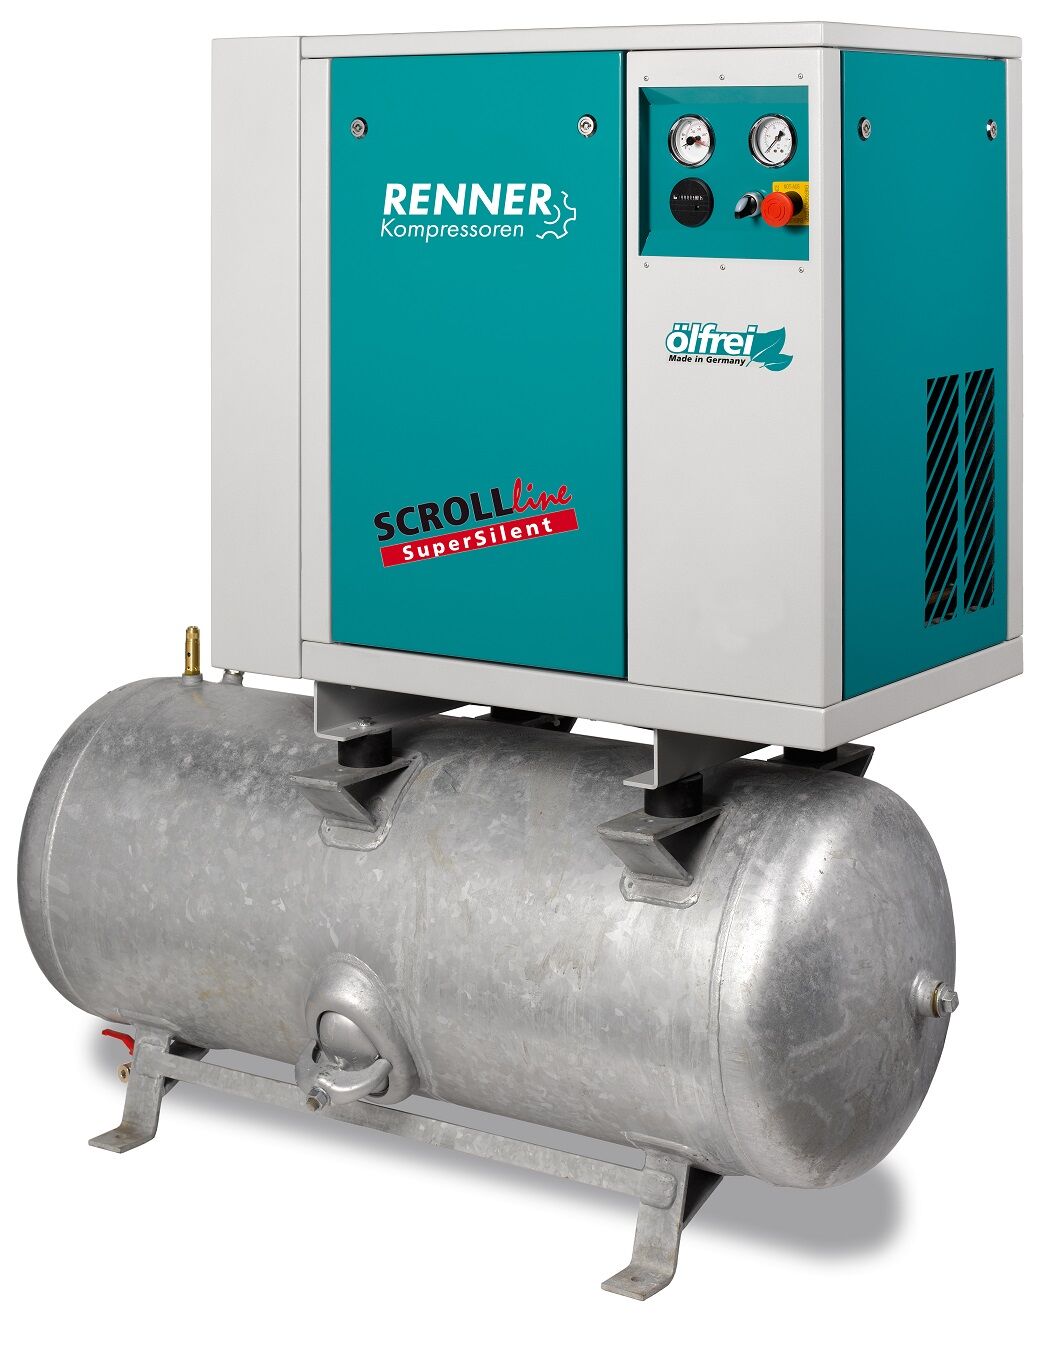 RENNER-Kompressor SLD-S 2,2 auf 250 Liter Druckbehälter- SuperSilent ölfreier Scrollkompressor